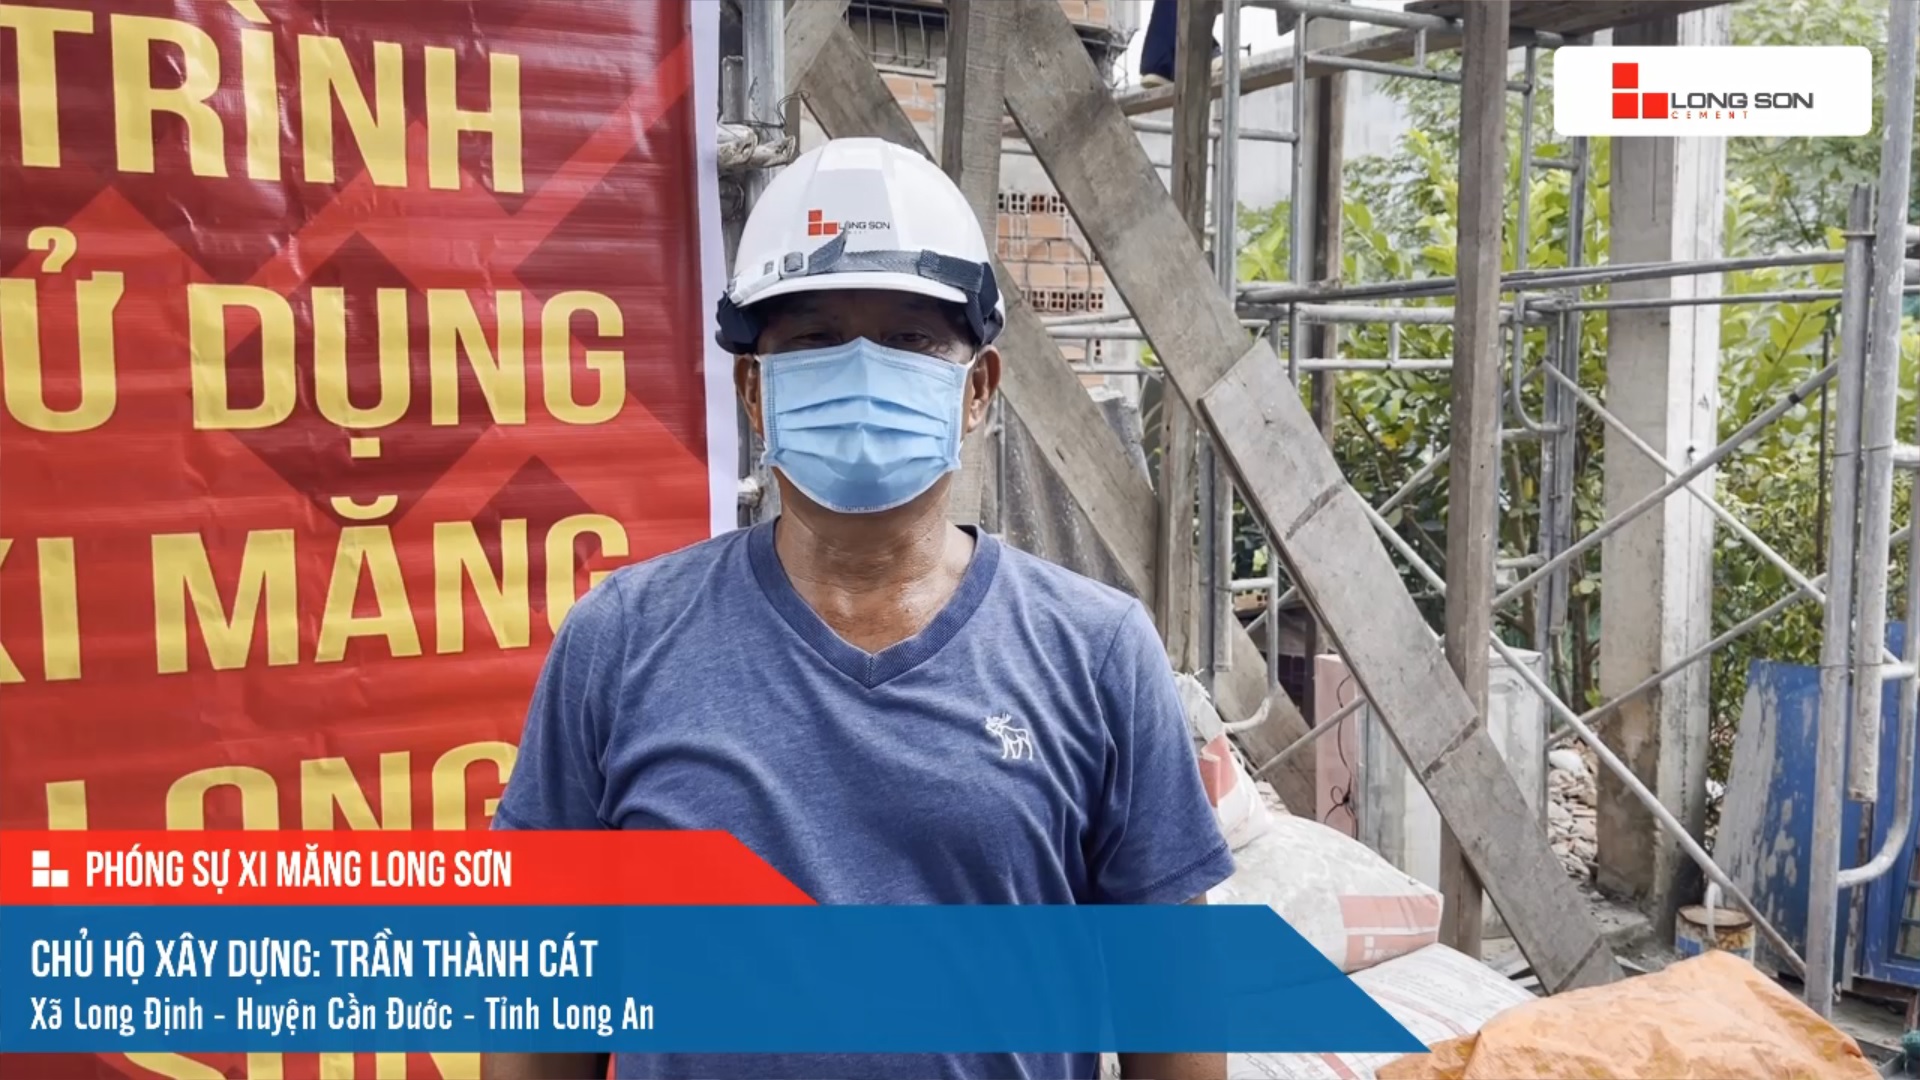 Phóng sự công trình sử dụng xi măng Long Sơn tại Long An ngày 11/11/2021